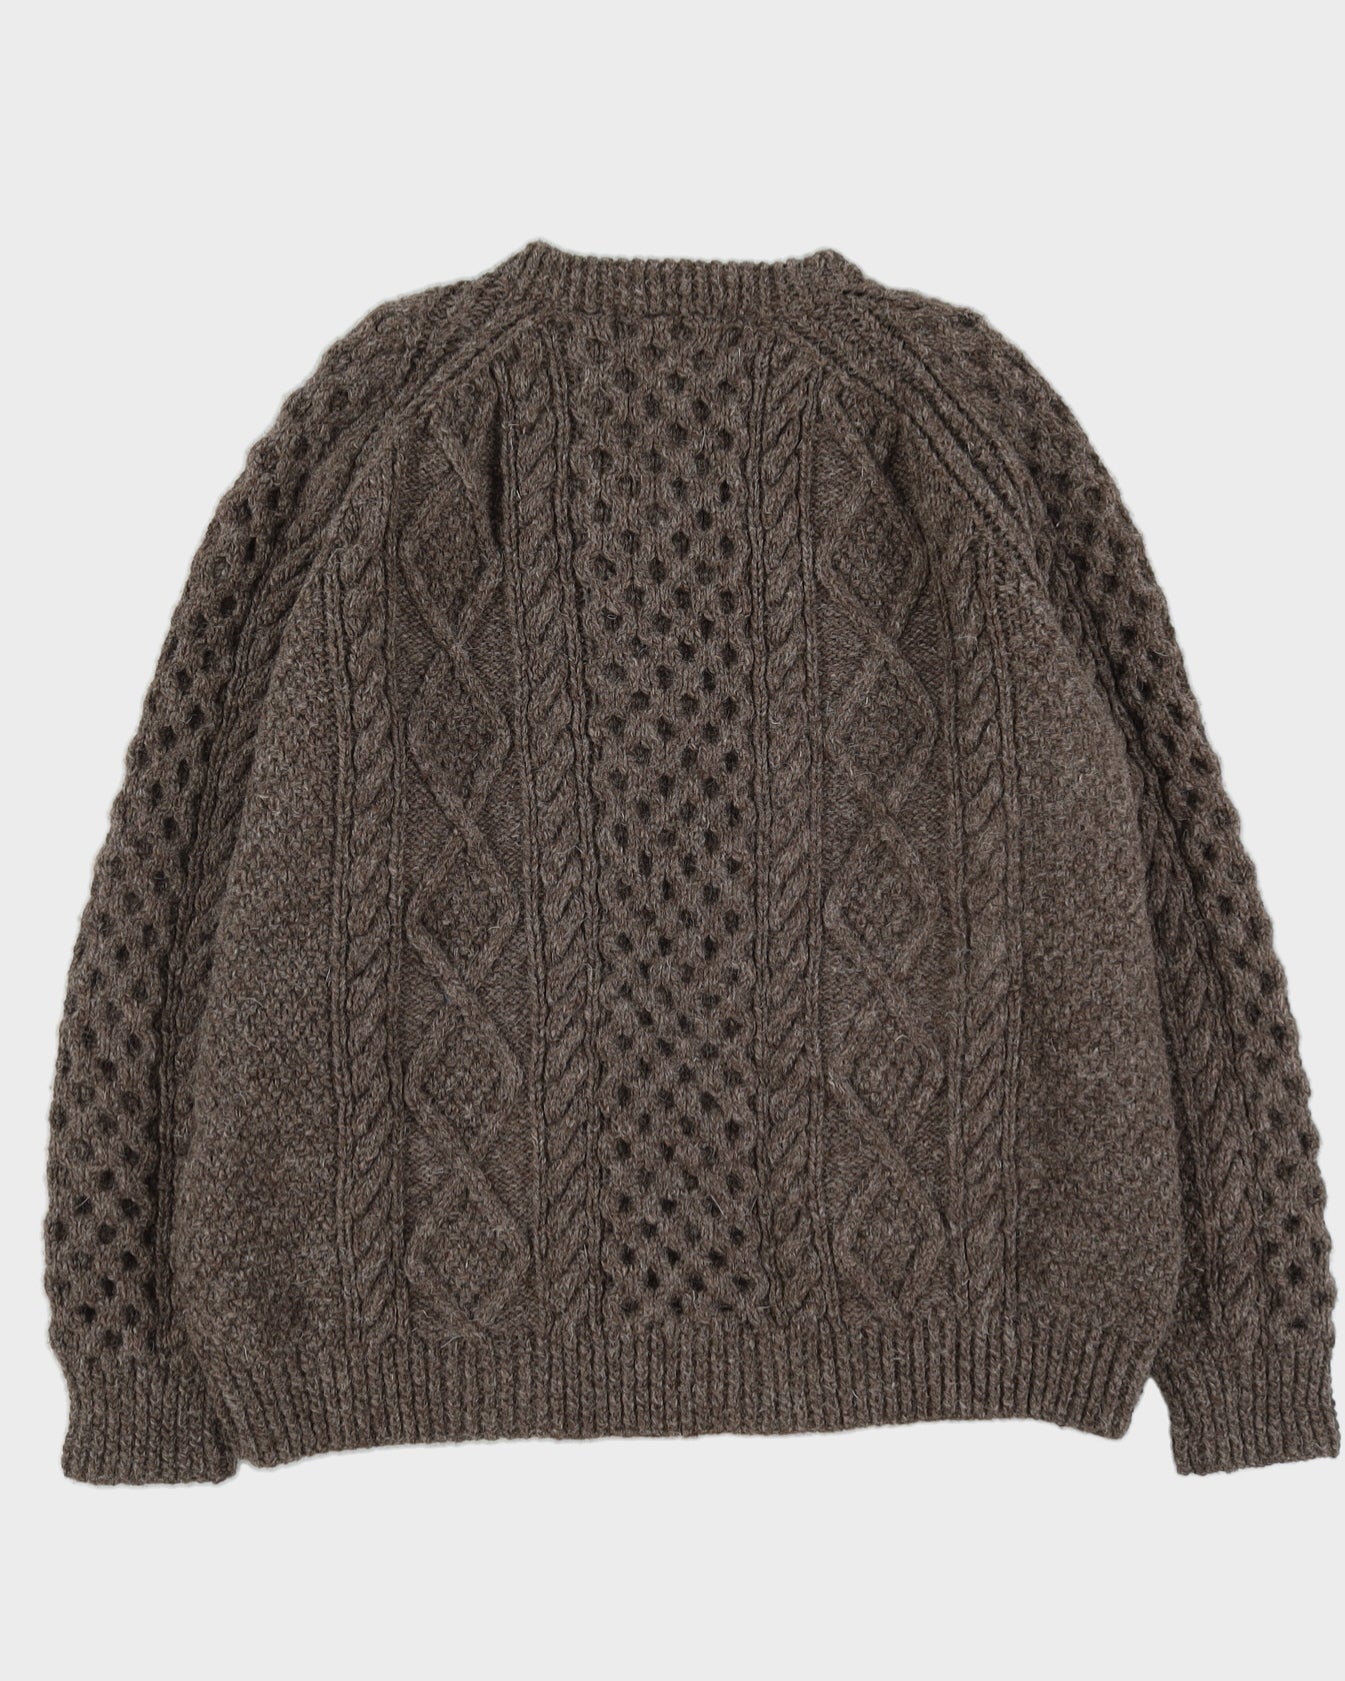 Brown Wool Aran Knitted Jumper - XXXL